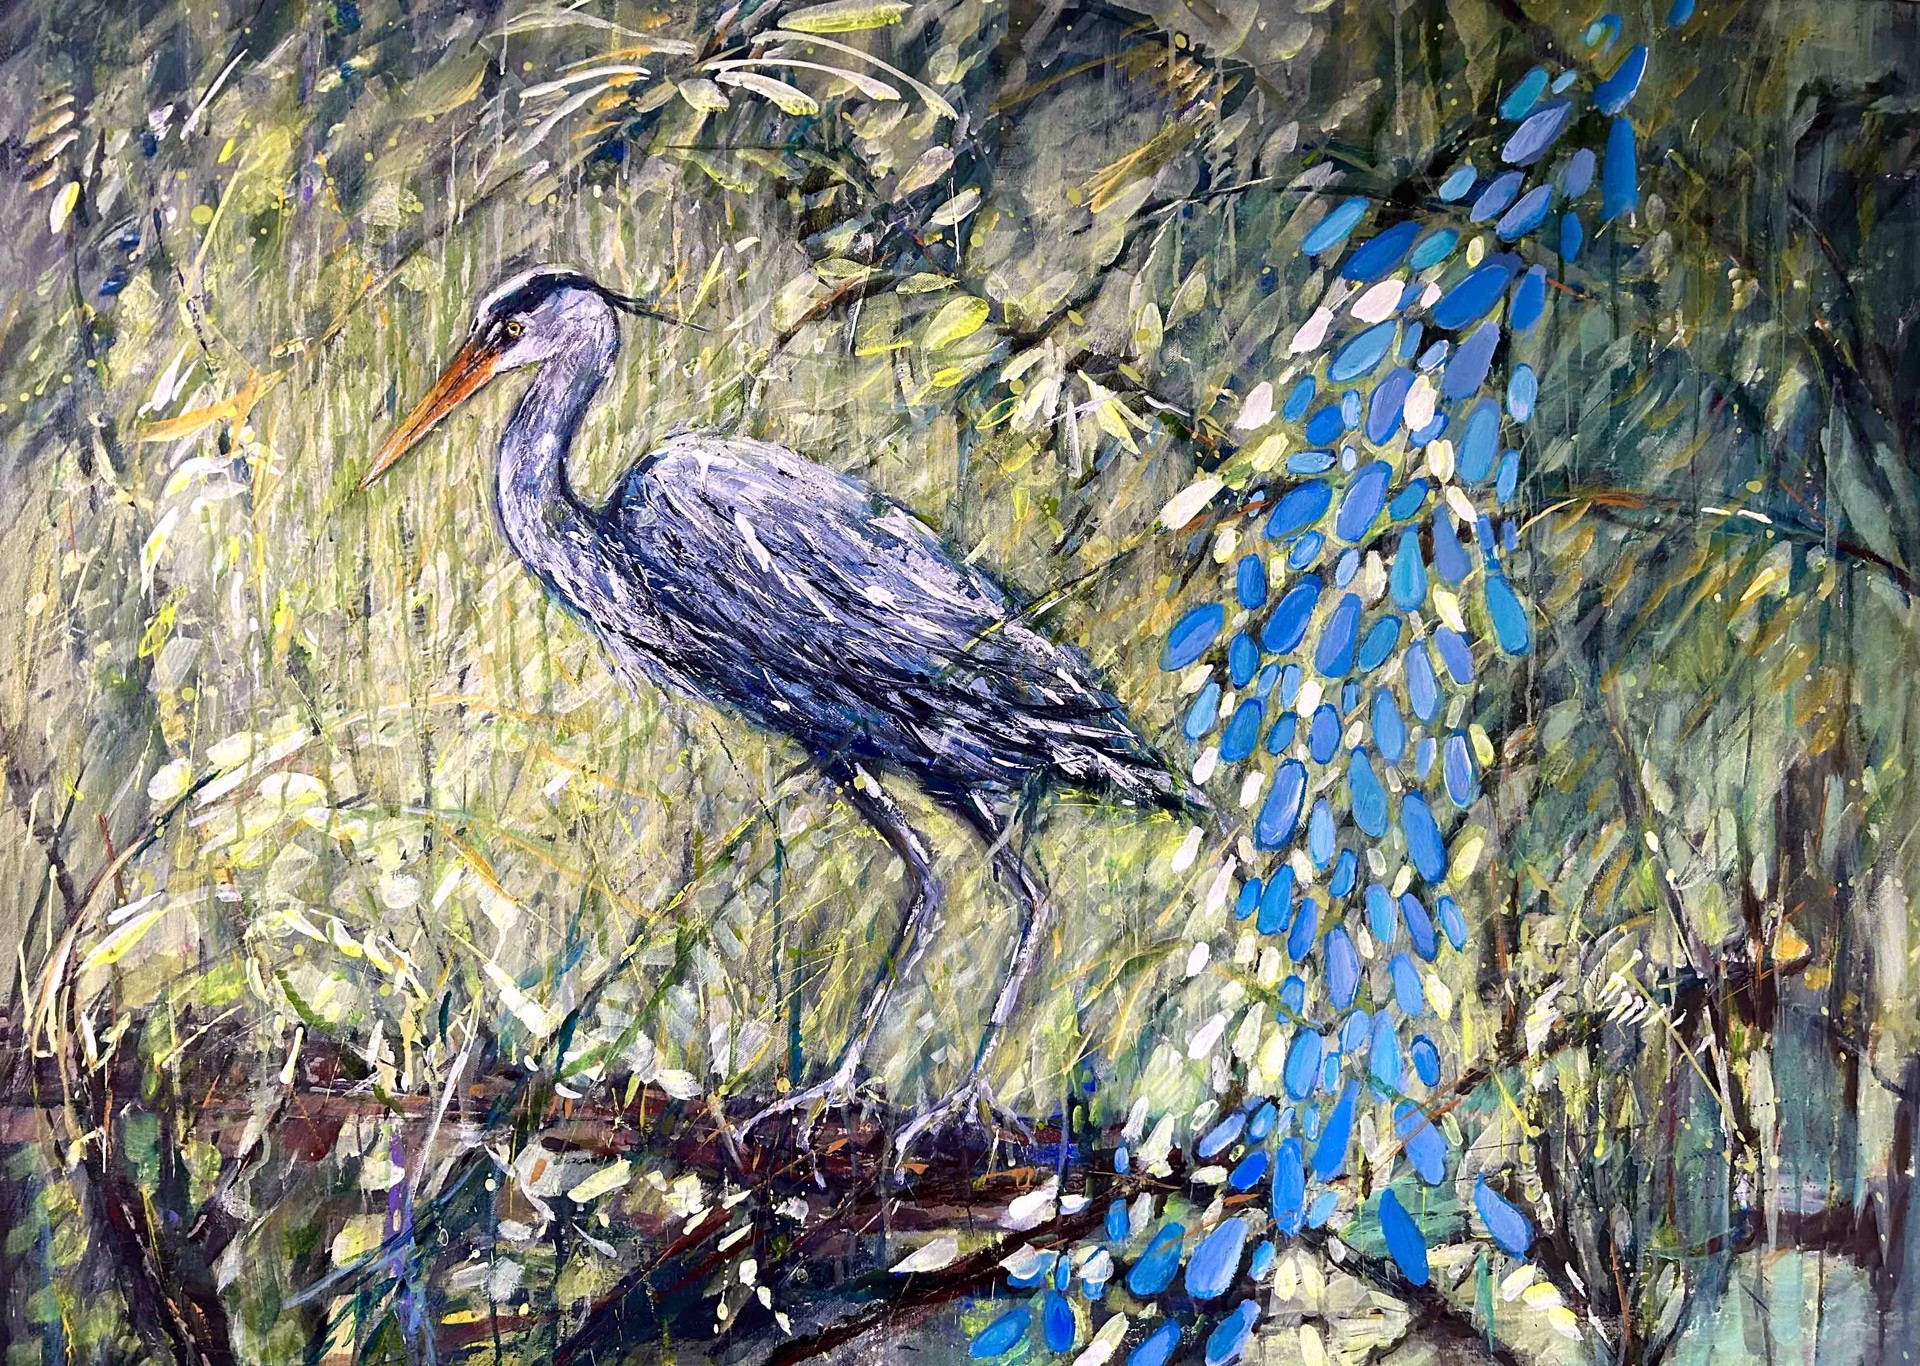 Blue Heron by Marleen De Waele - De Bock